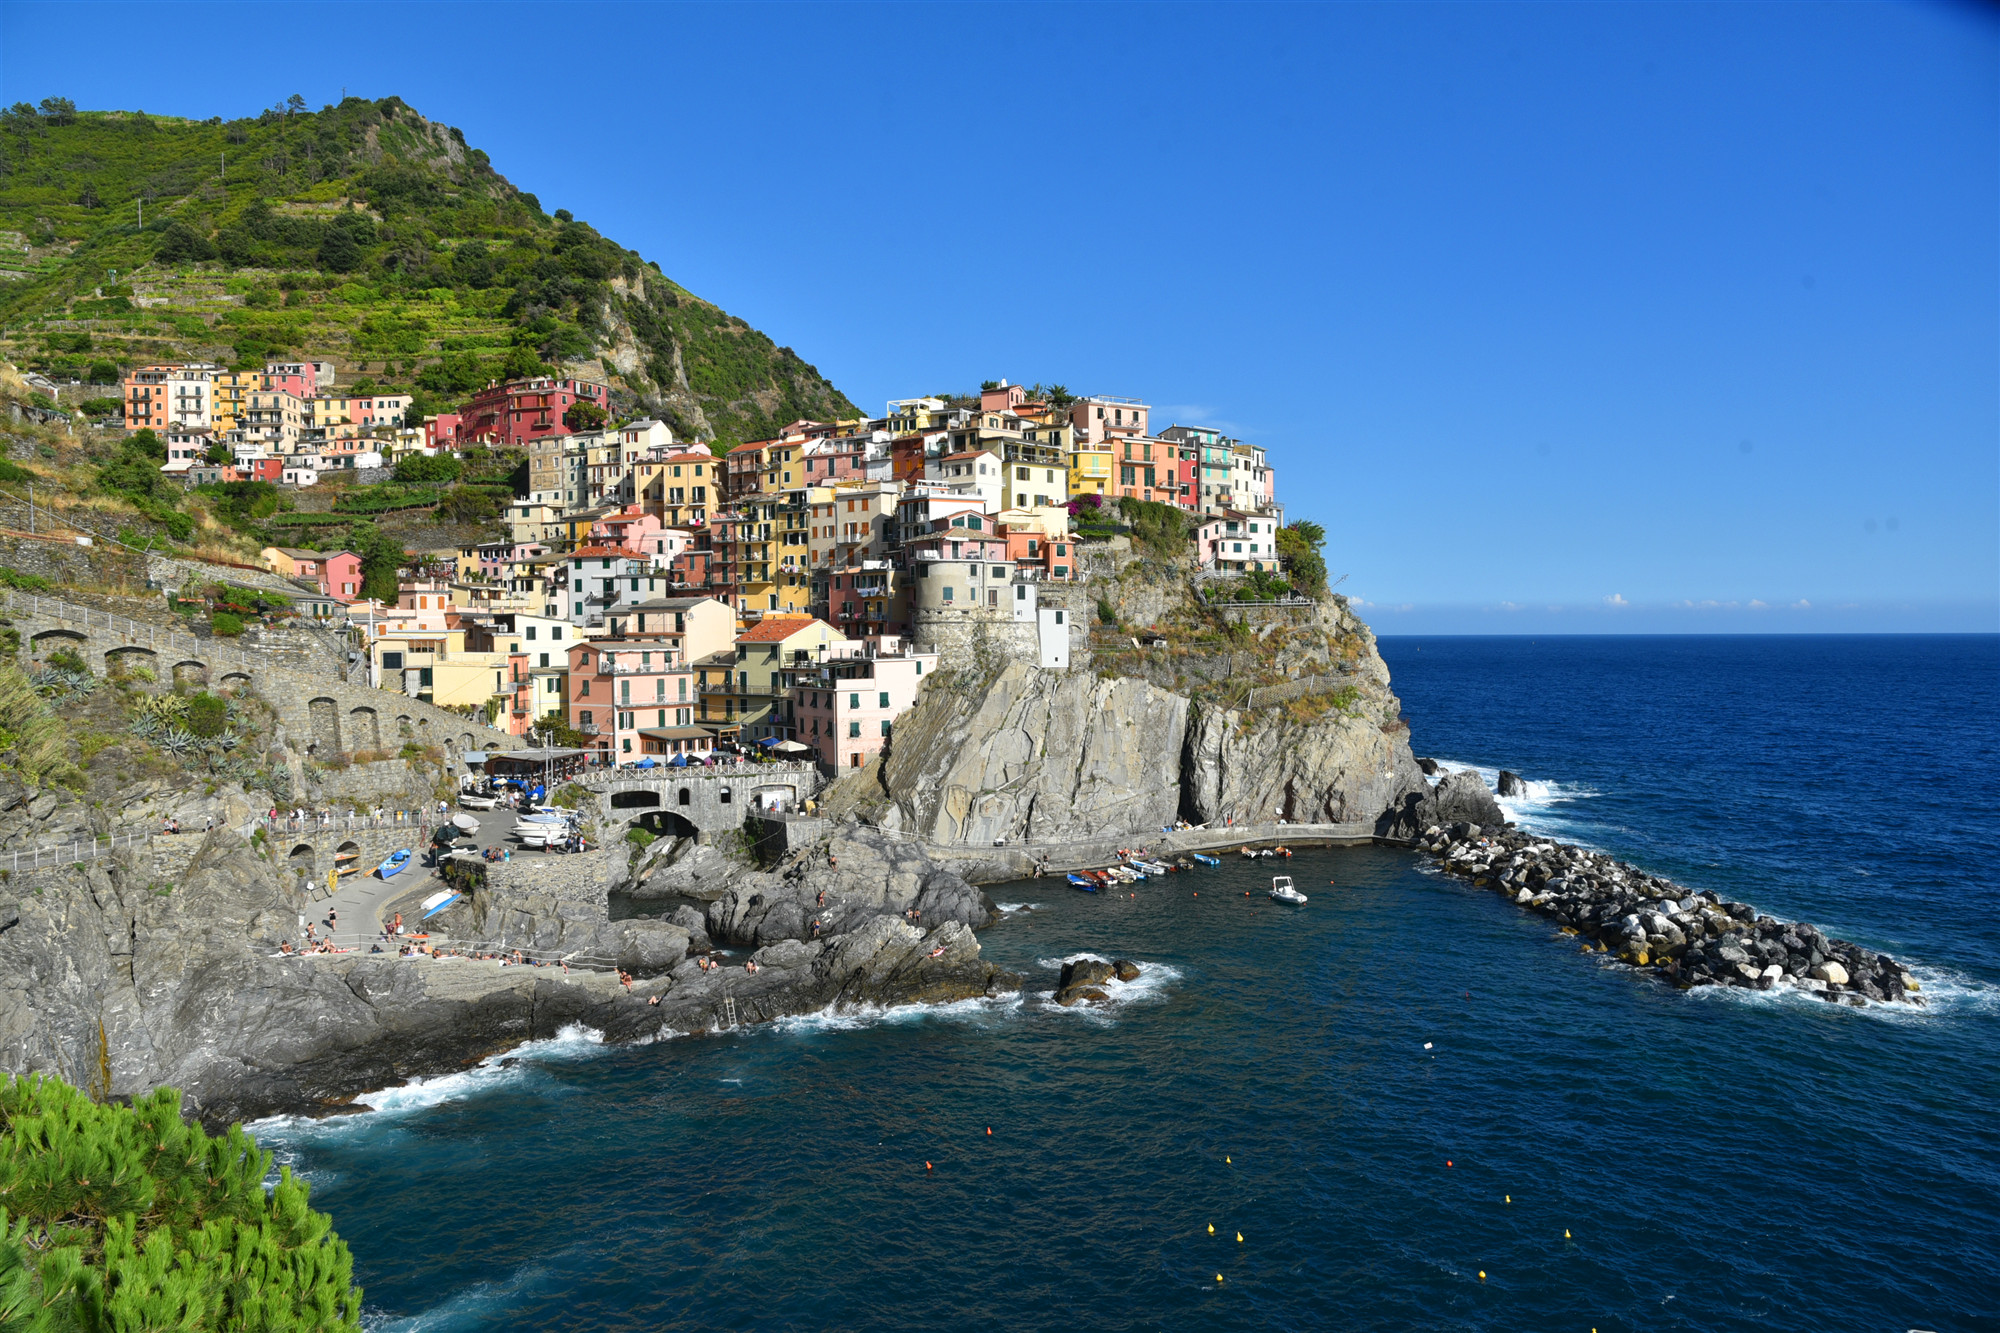 被当作年度最佳封面,最佳壁纸的小镇—意大利五渔村